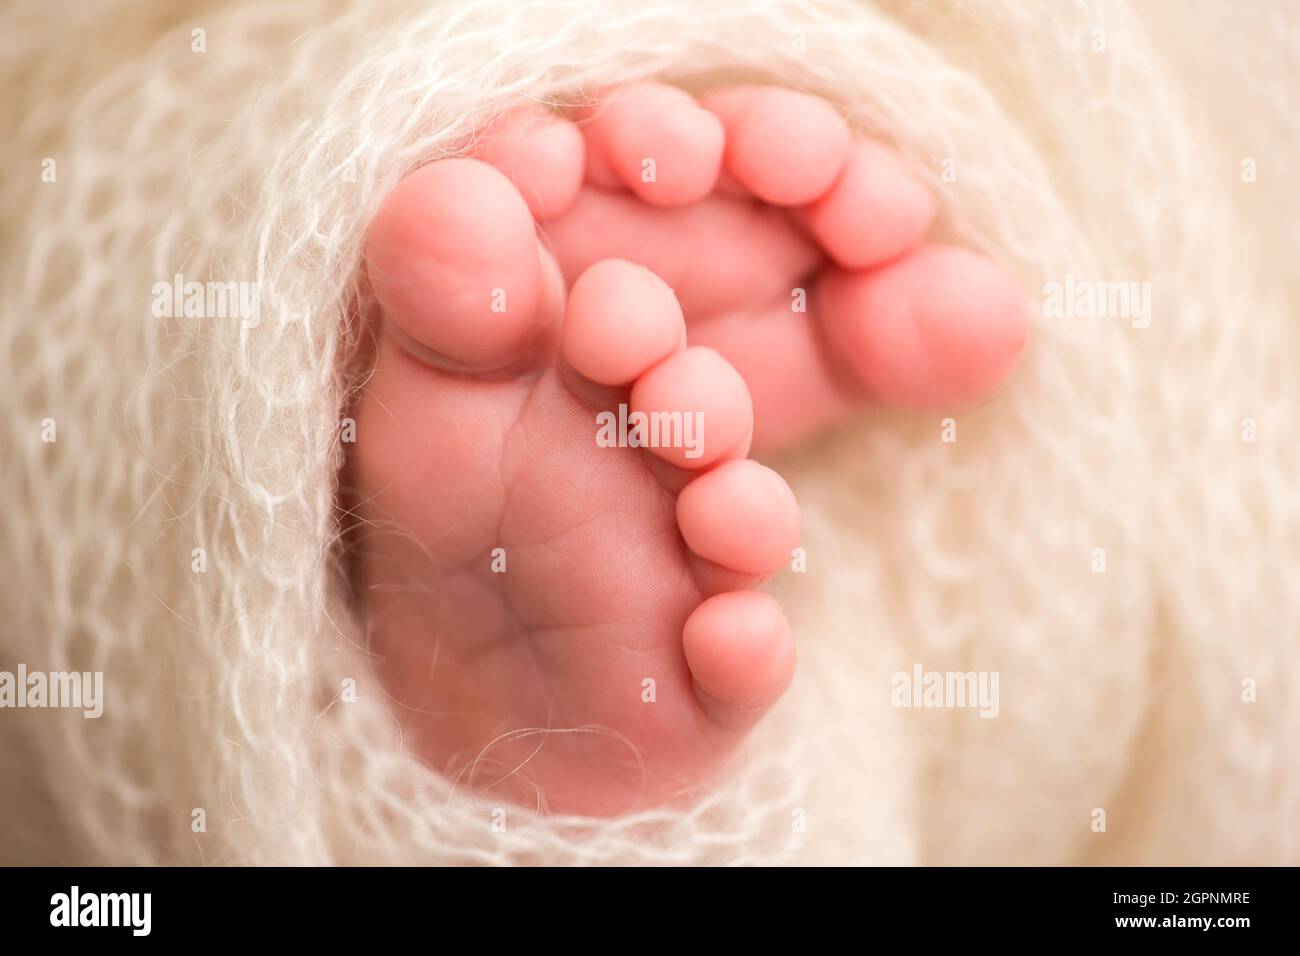 Una foto de primer plano de las piernas de un recién nacido en un cuadros blancos. Pies y dedos de un recién nacido en una manta blanca suave Foto de stock